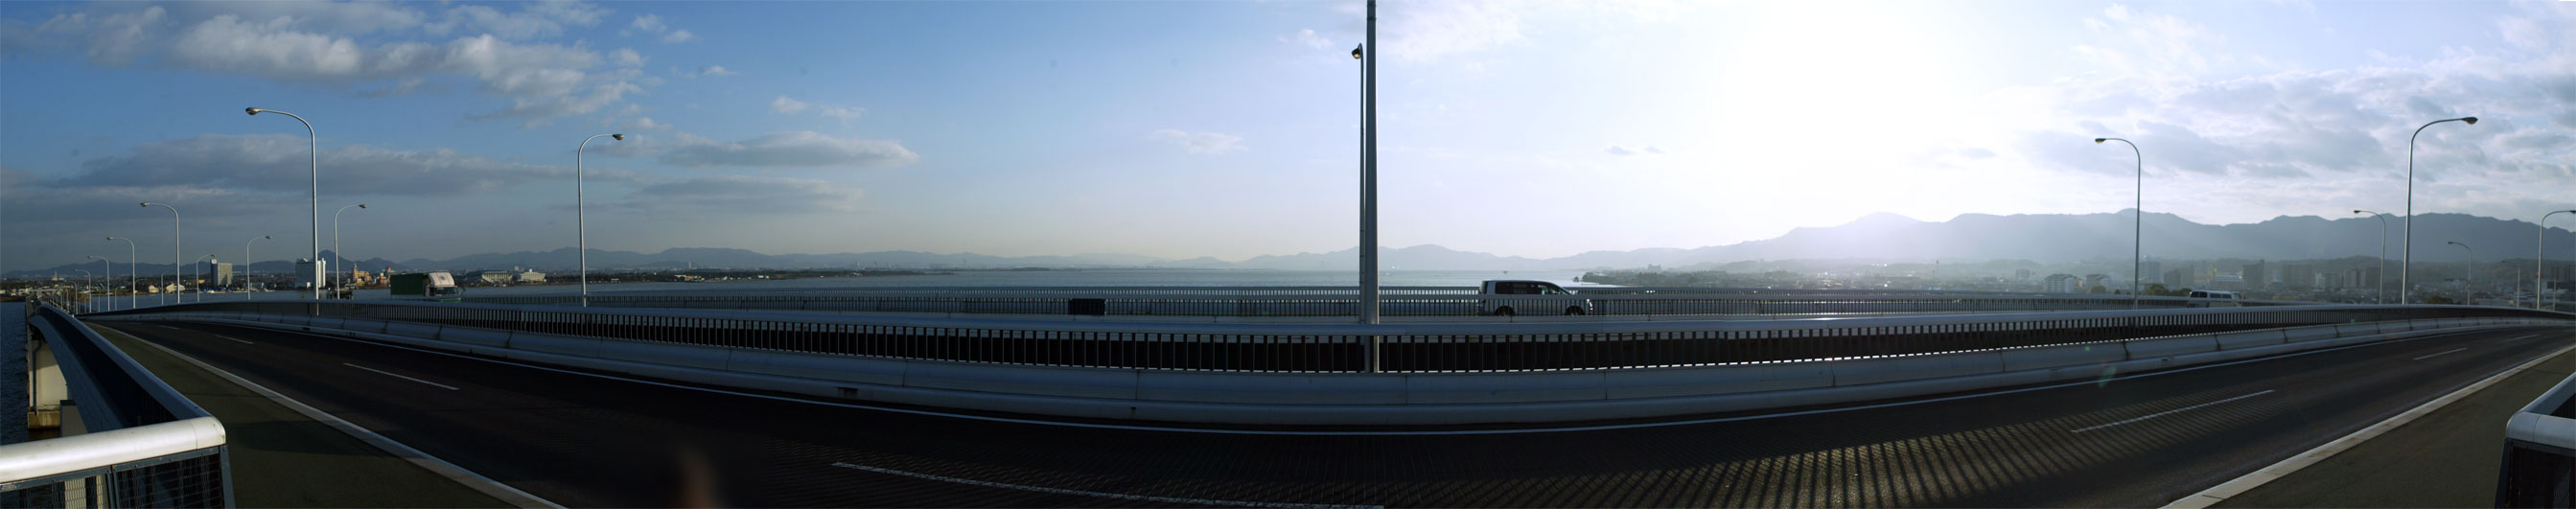 琵琶湖大橋北側の180度の眺め-南側